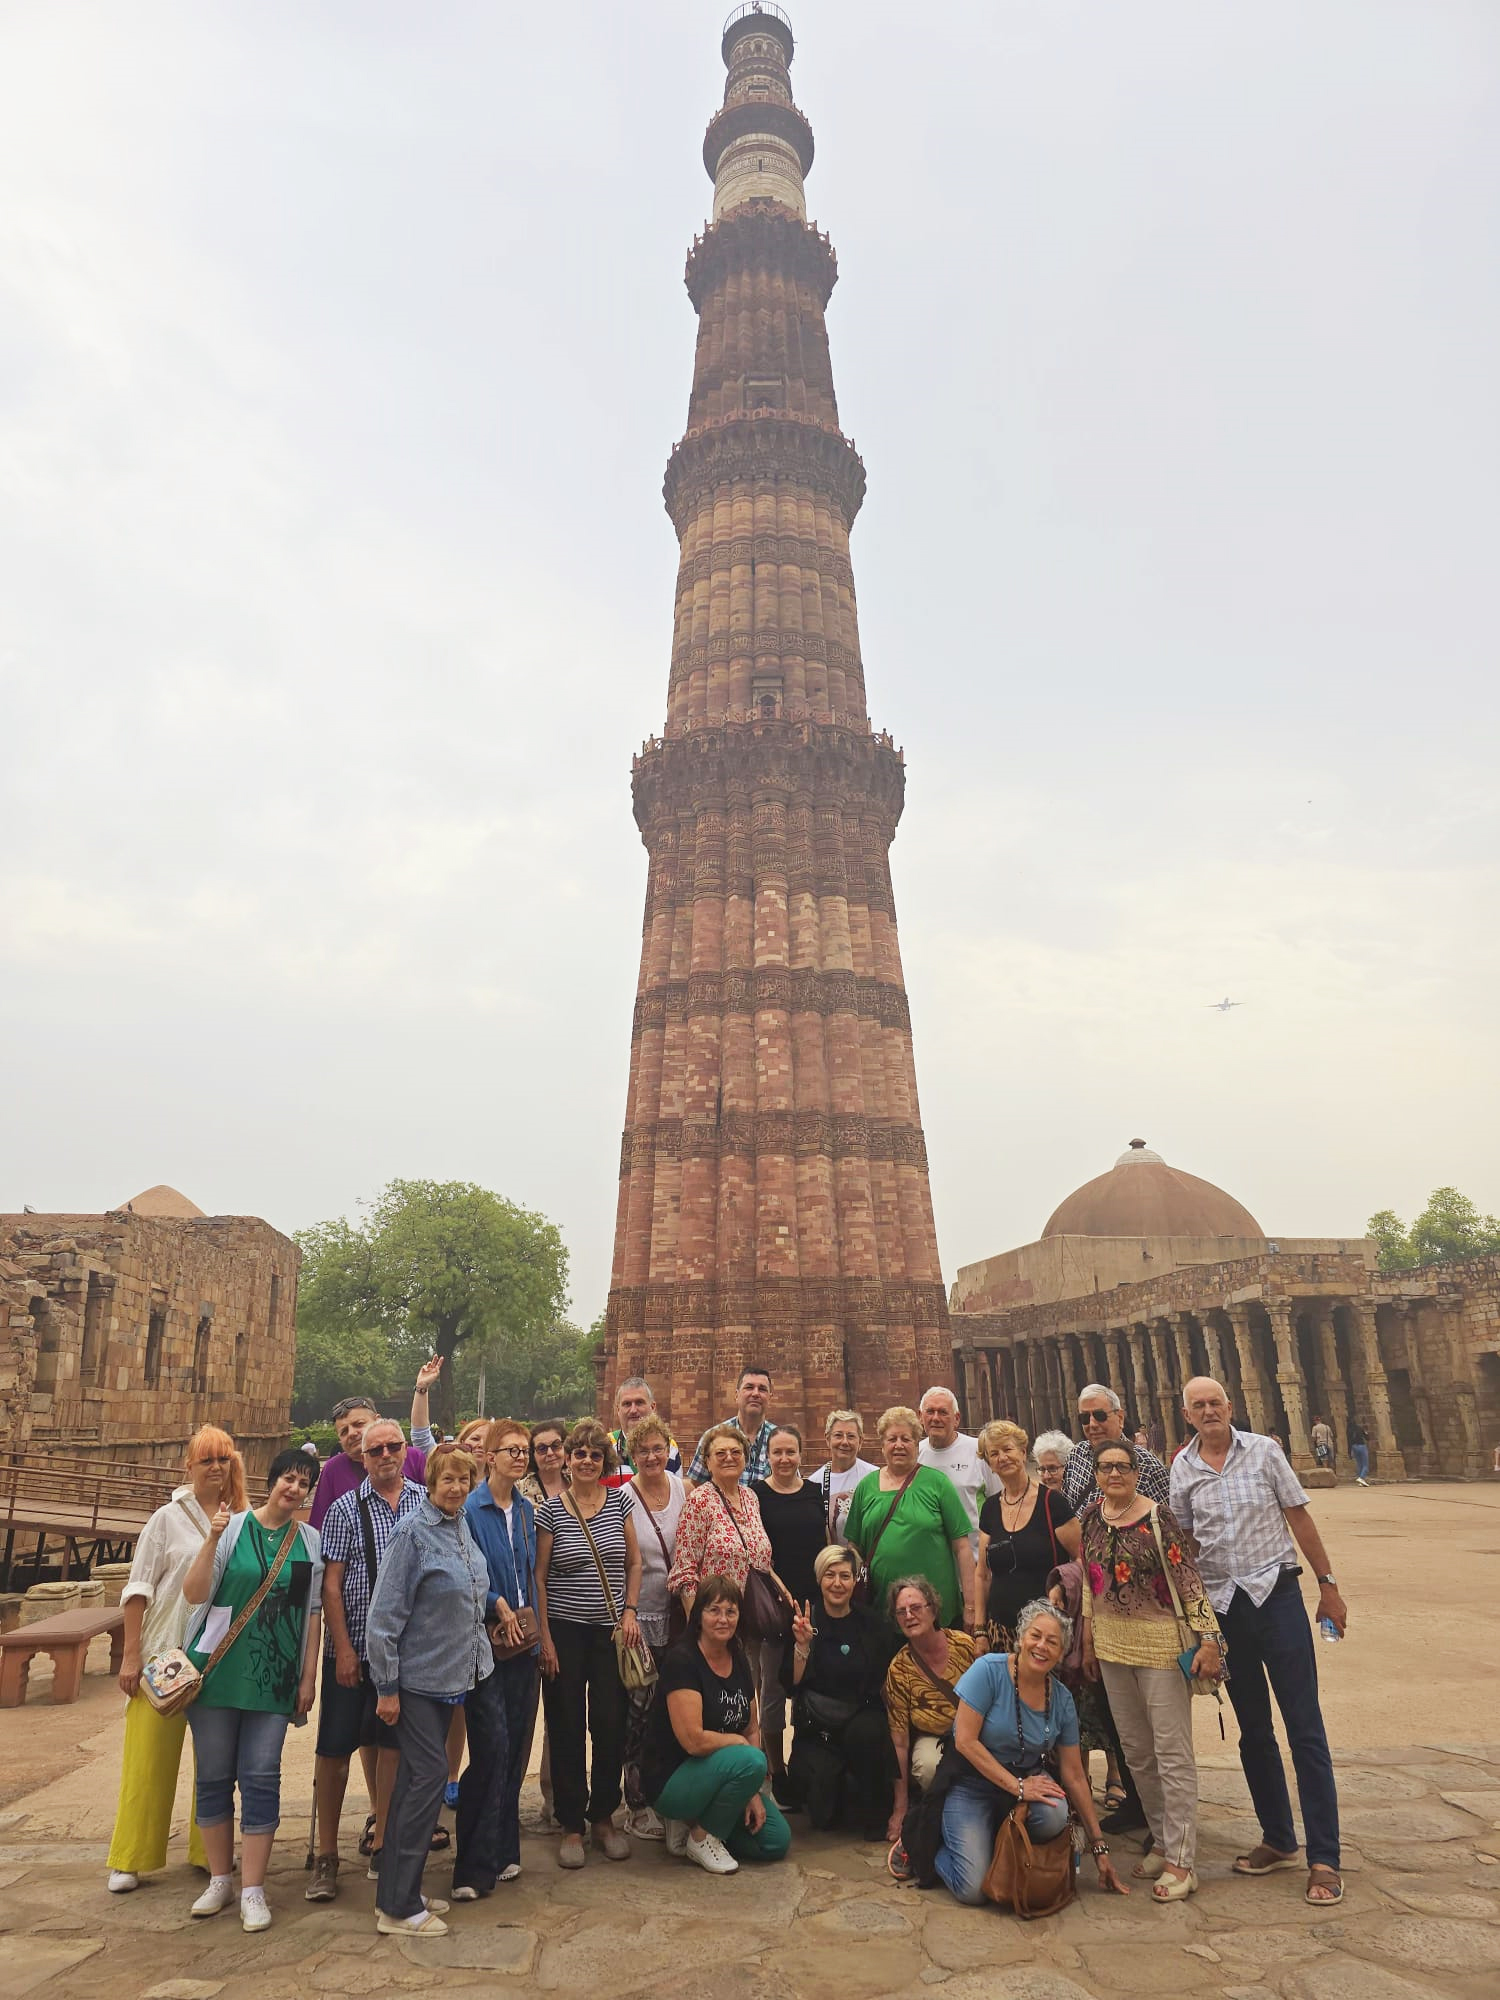 La Qutub Minar in New Delhi